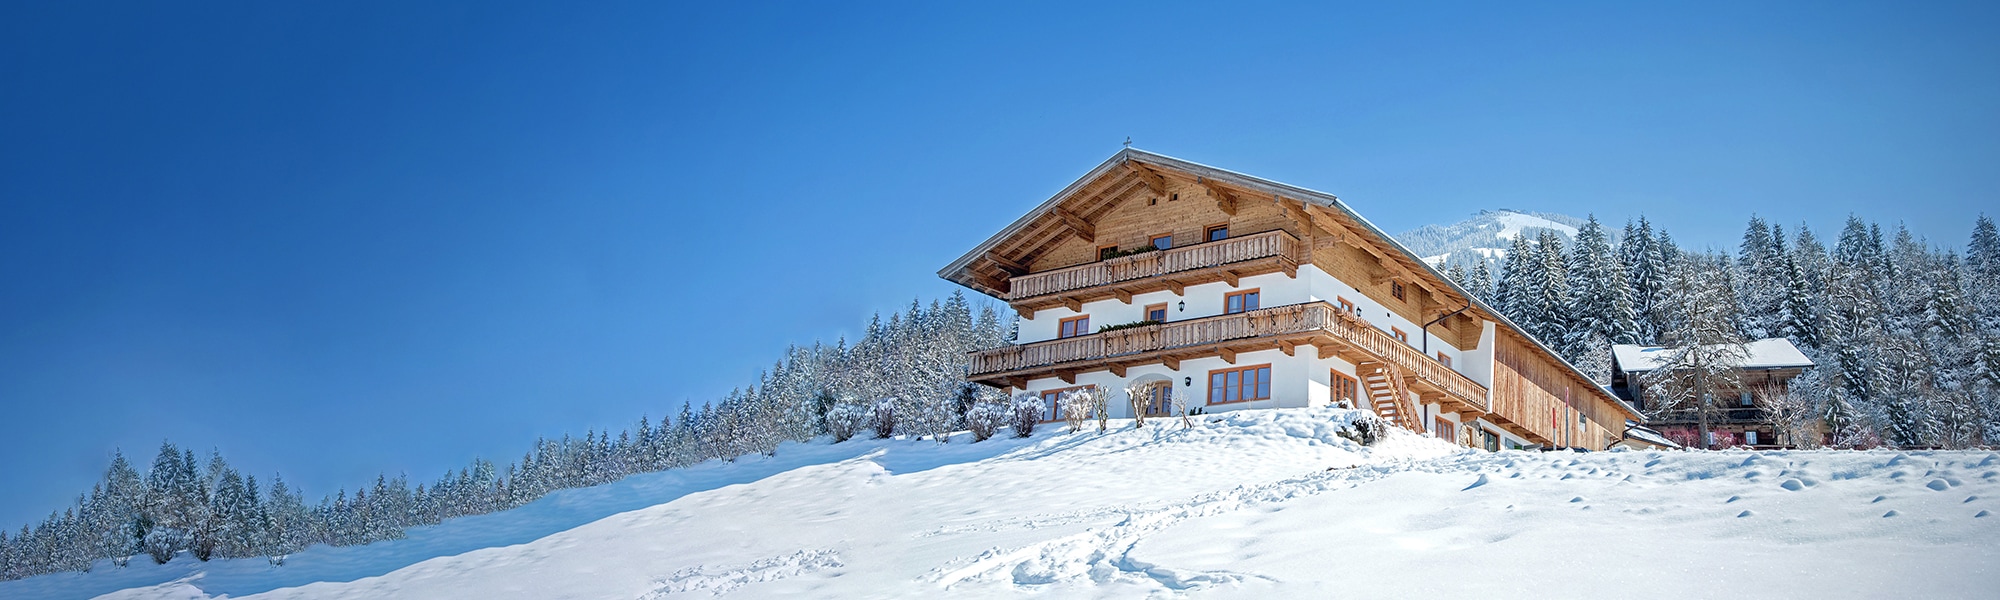 Wintersport chalet huren in Oostenrijk huisjes Belvilla